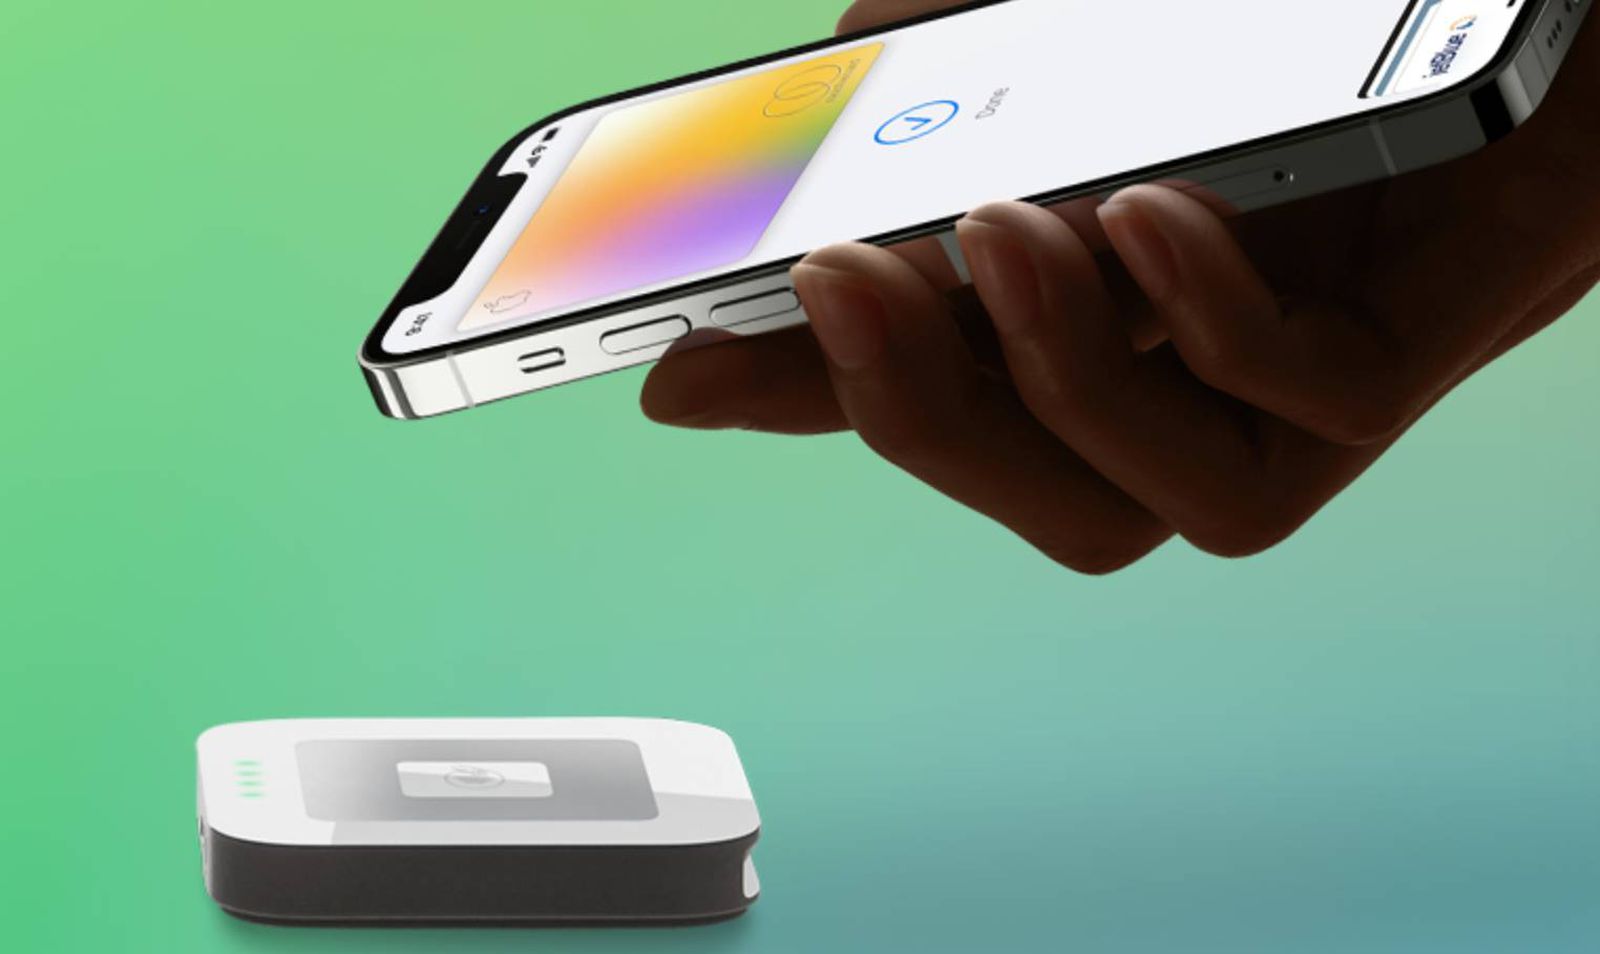 La UE supuestamente satisfecha con los planes de Apple de abrir el chip NFC del iPhone a sus rivales – Título SEO en español: La Unión Europea contenta con la decisión de Apple de abrir el chip NFC del iPhone a competidores